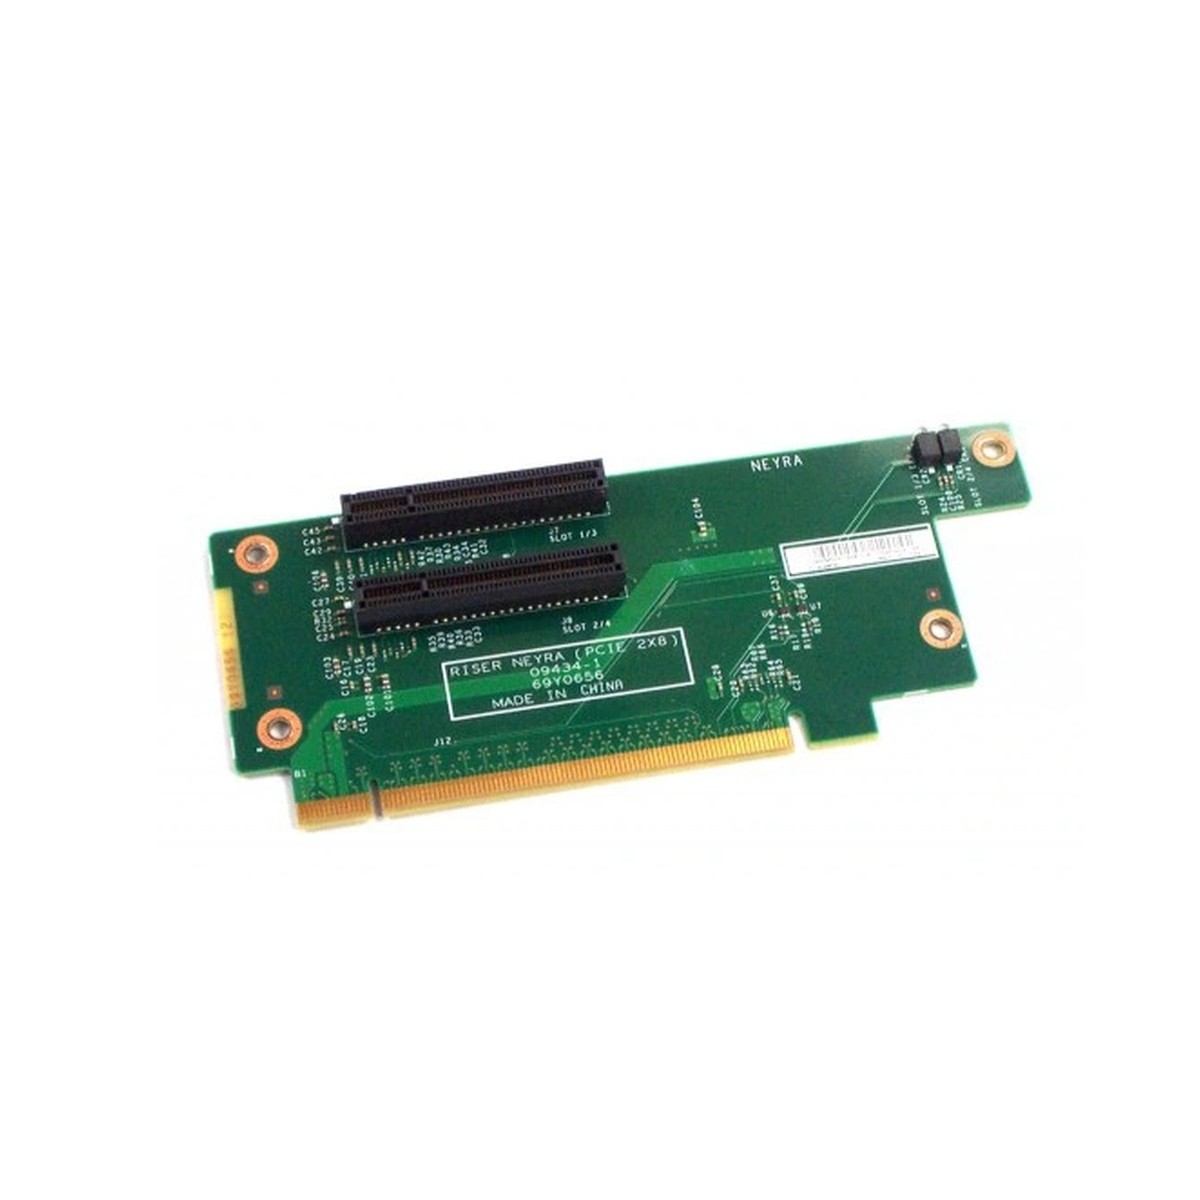 RISER CARD NEYRA IBM x3650 M3 PCIE 2X8 69Y4324